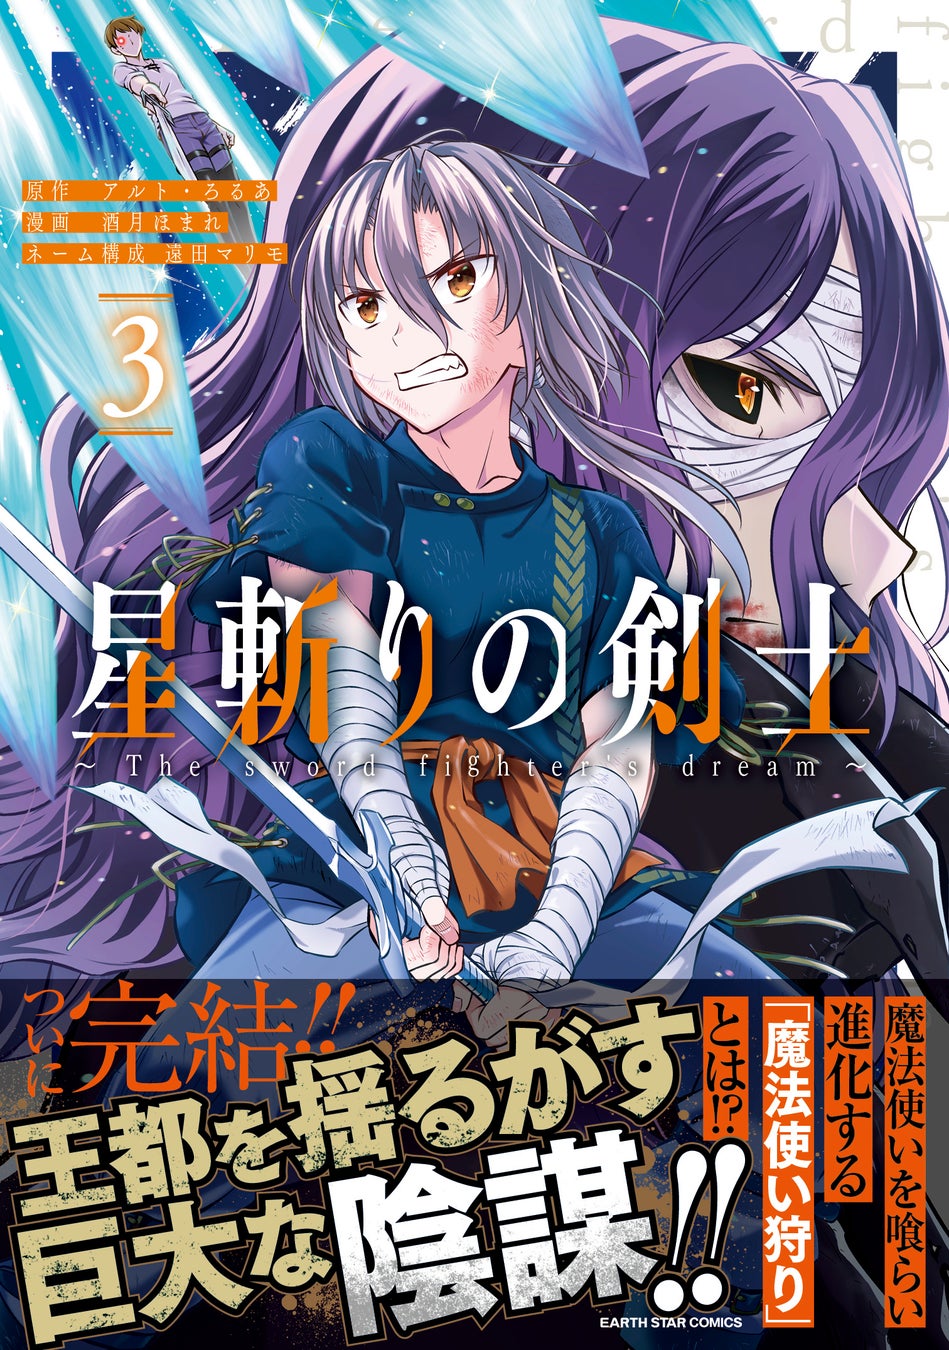 ＜ついに完結＞『星斬りの剣士 ～The sword fighter’s dream～』コミックス第3巻12月13日(水)発売